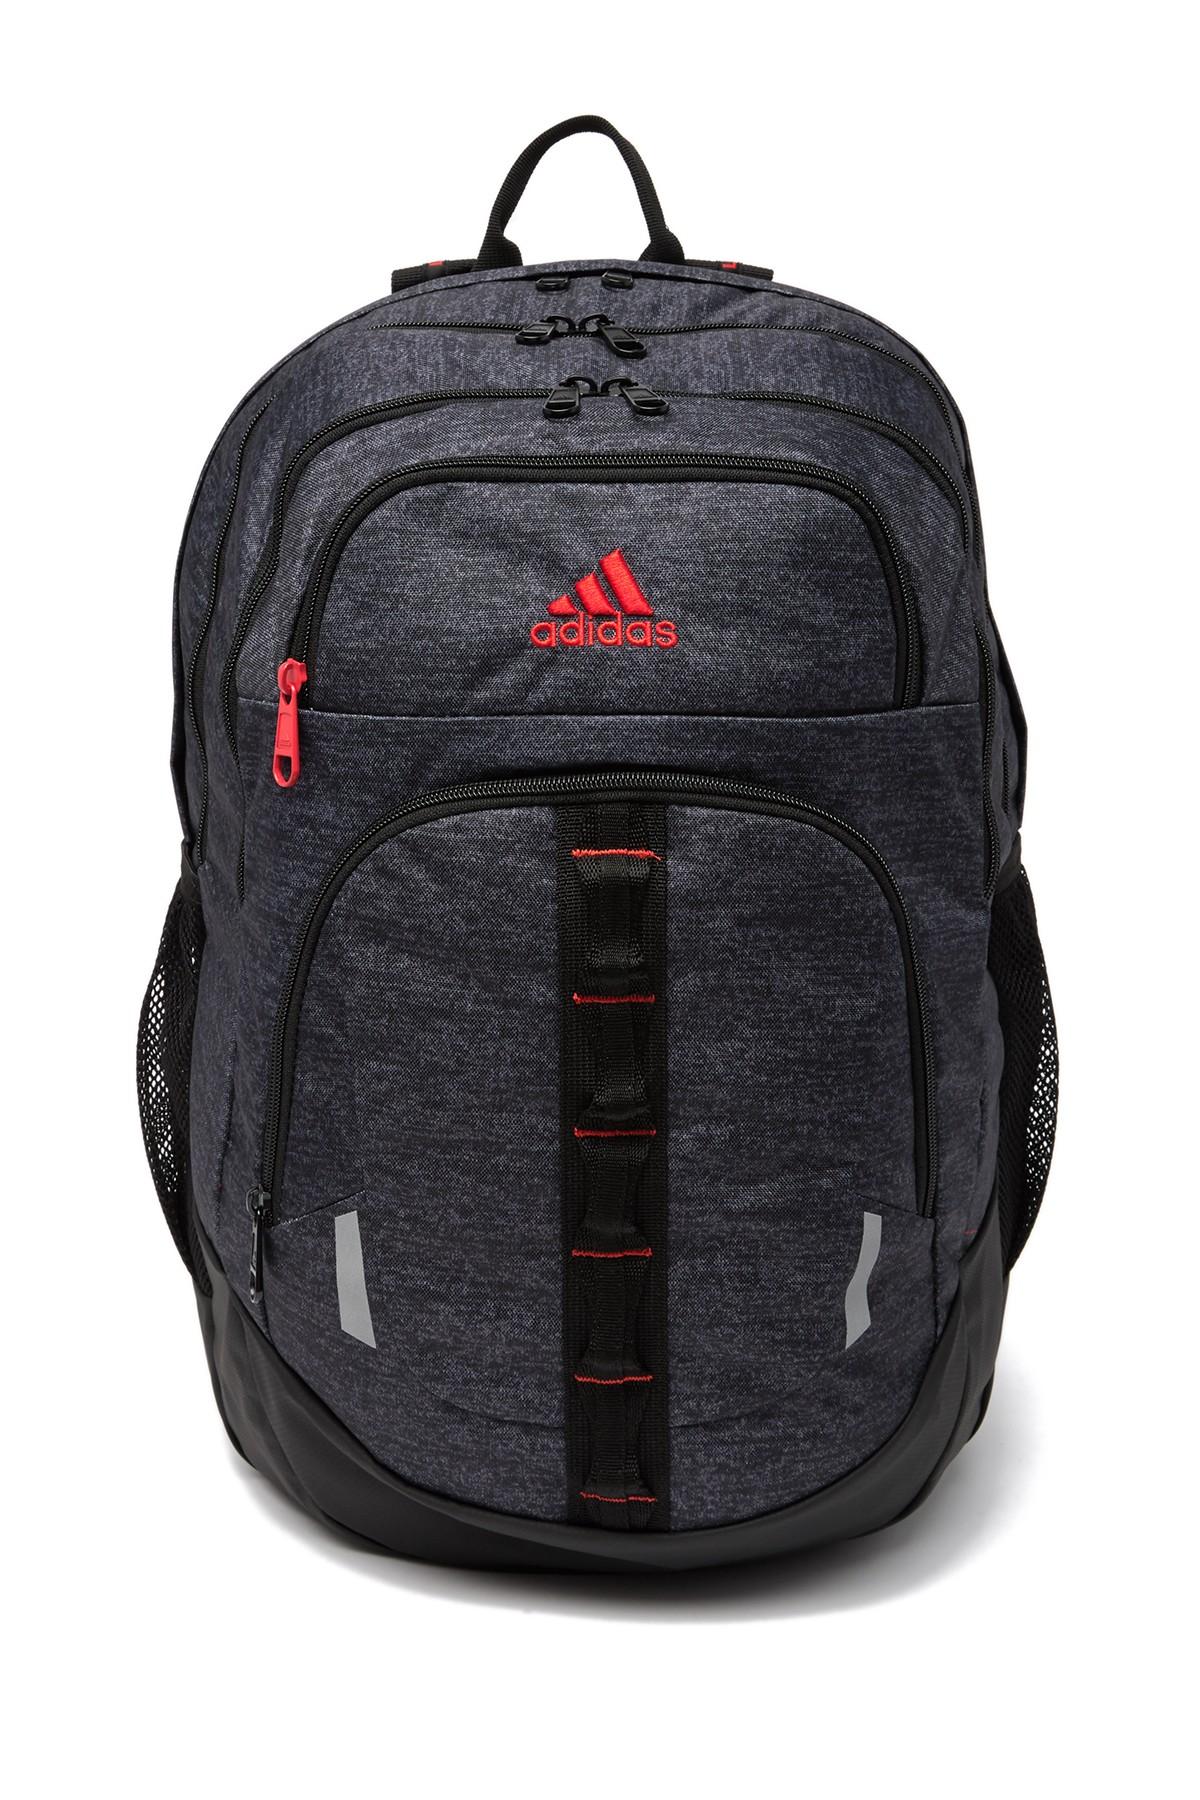 prime v backpack adidas